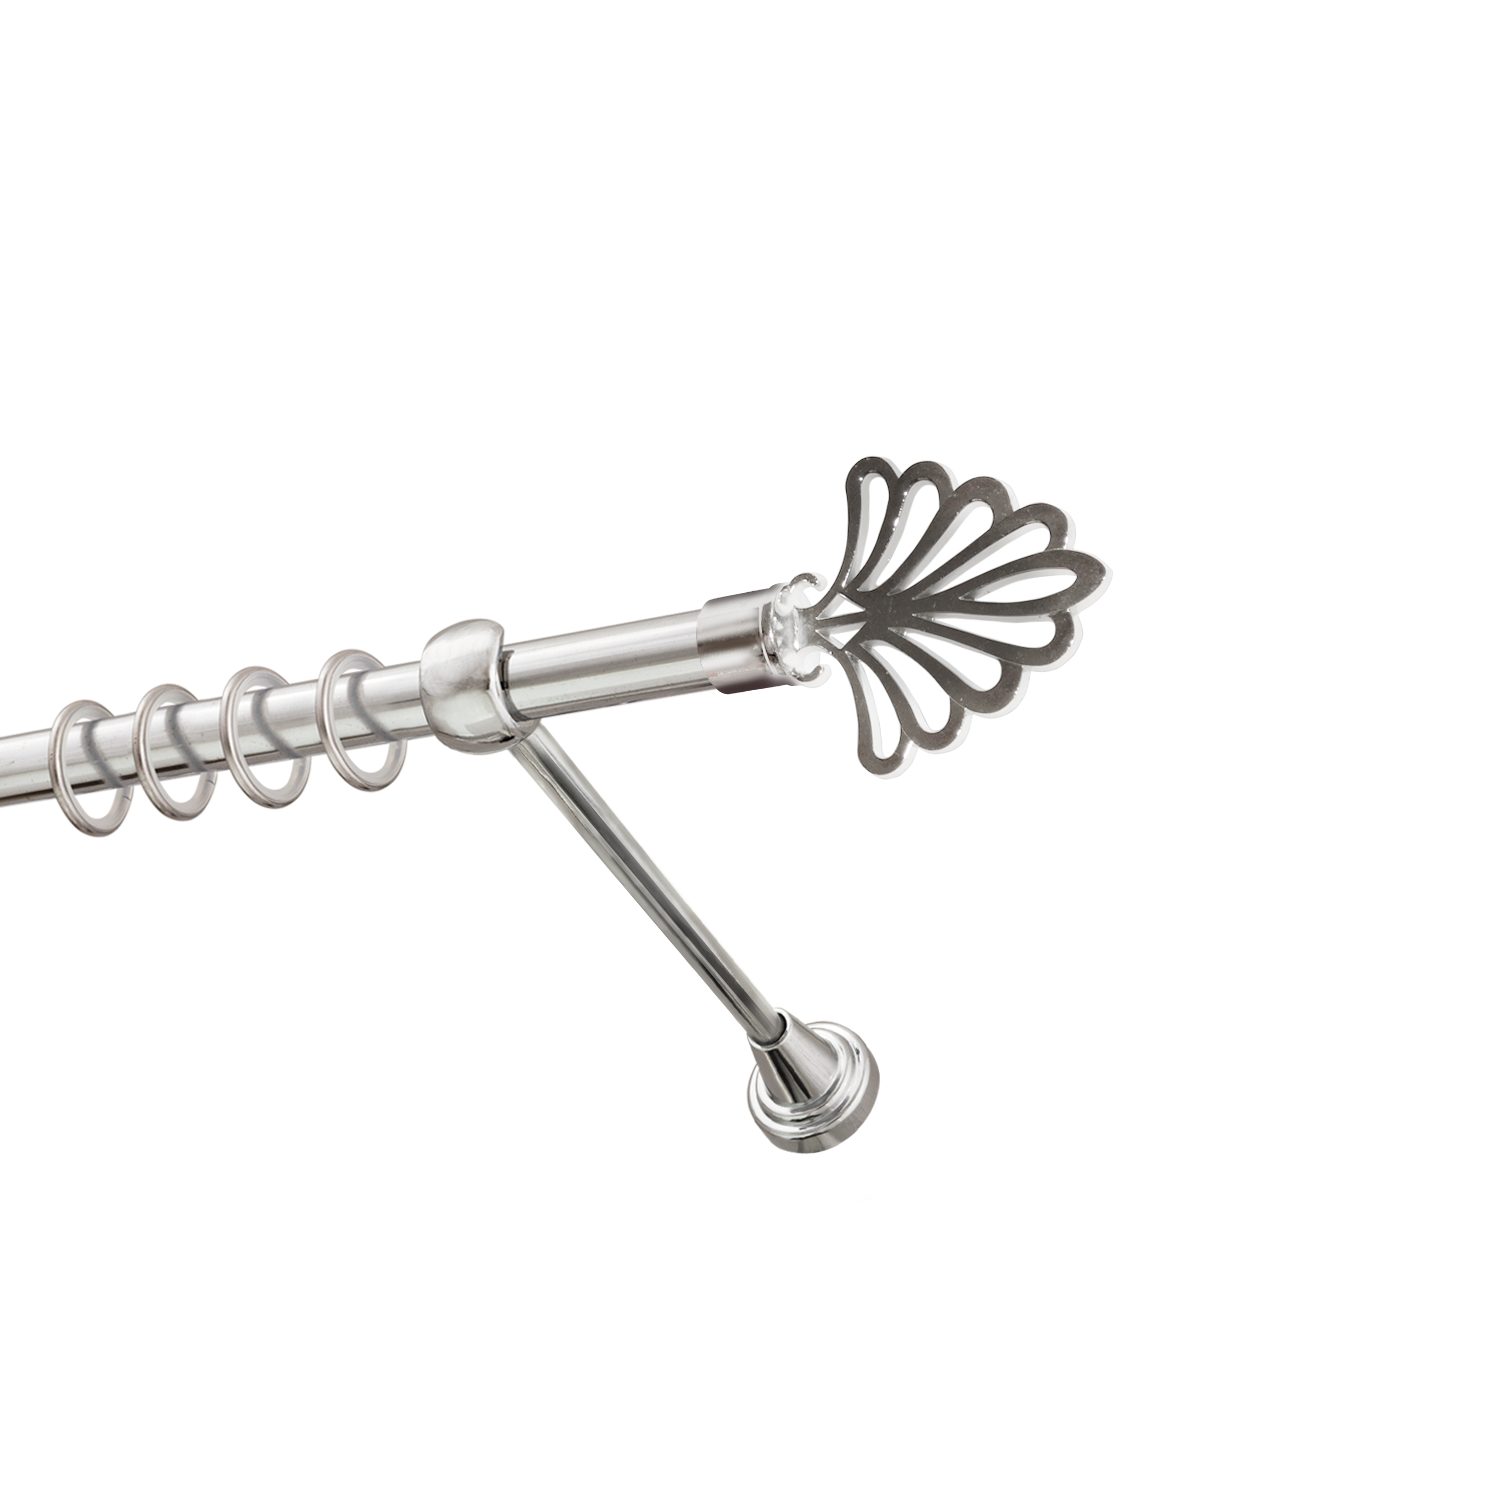 Металлический карниз для штор Бутик, однорядный 16 мм, серебро, гладкая штанга, длина 240 см - фото Wikidecor.ru